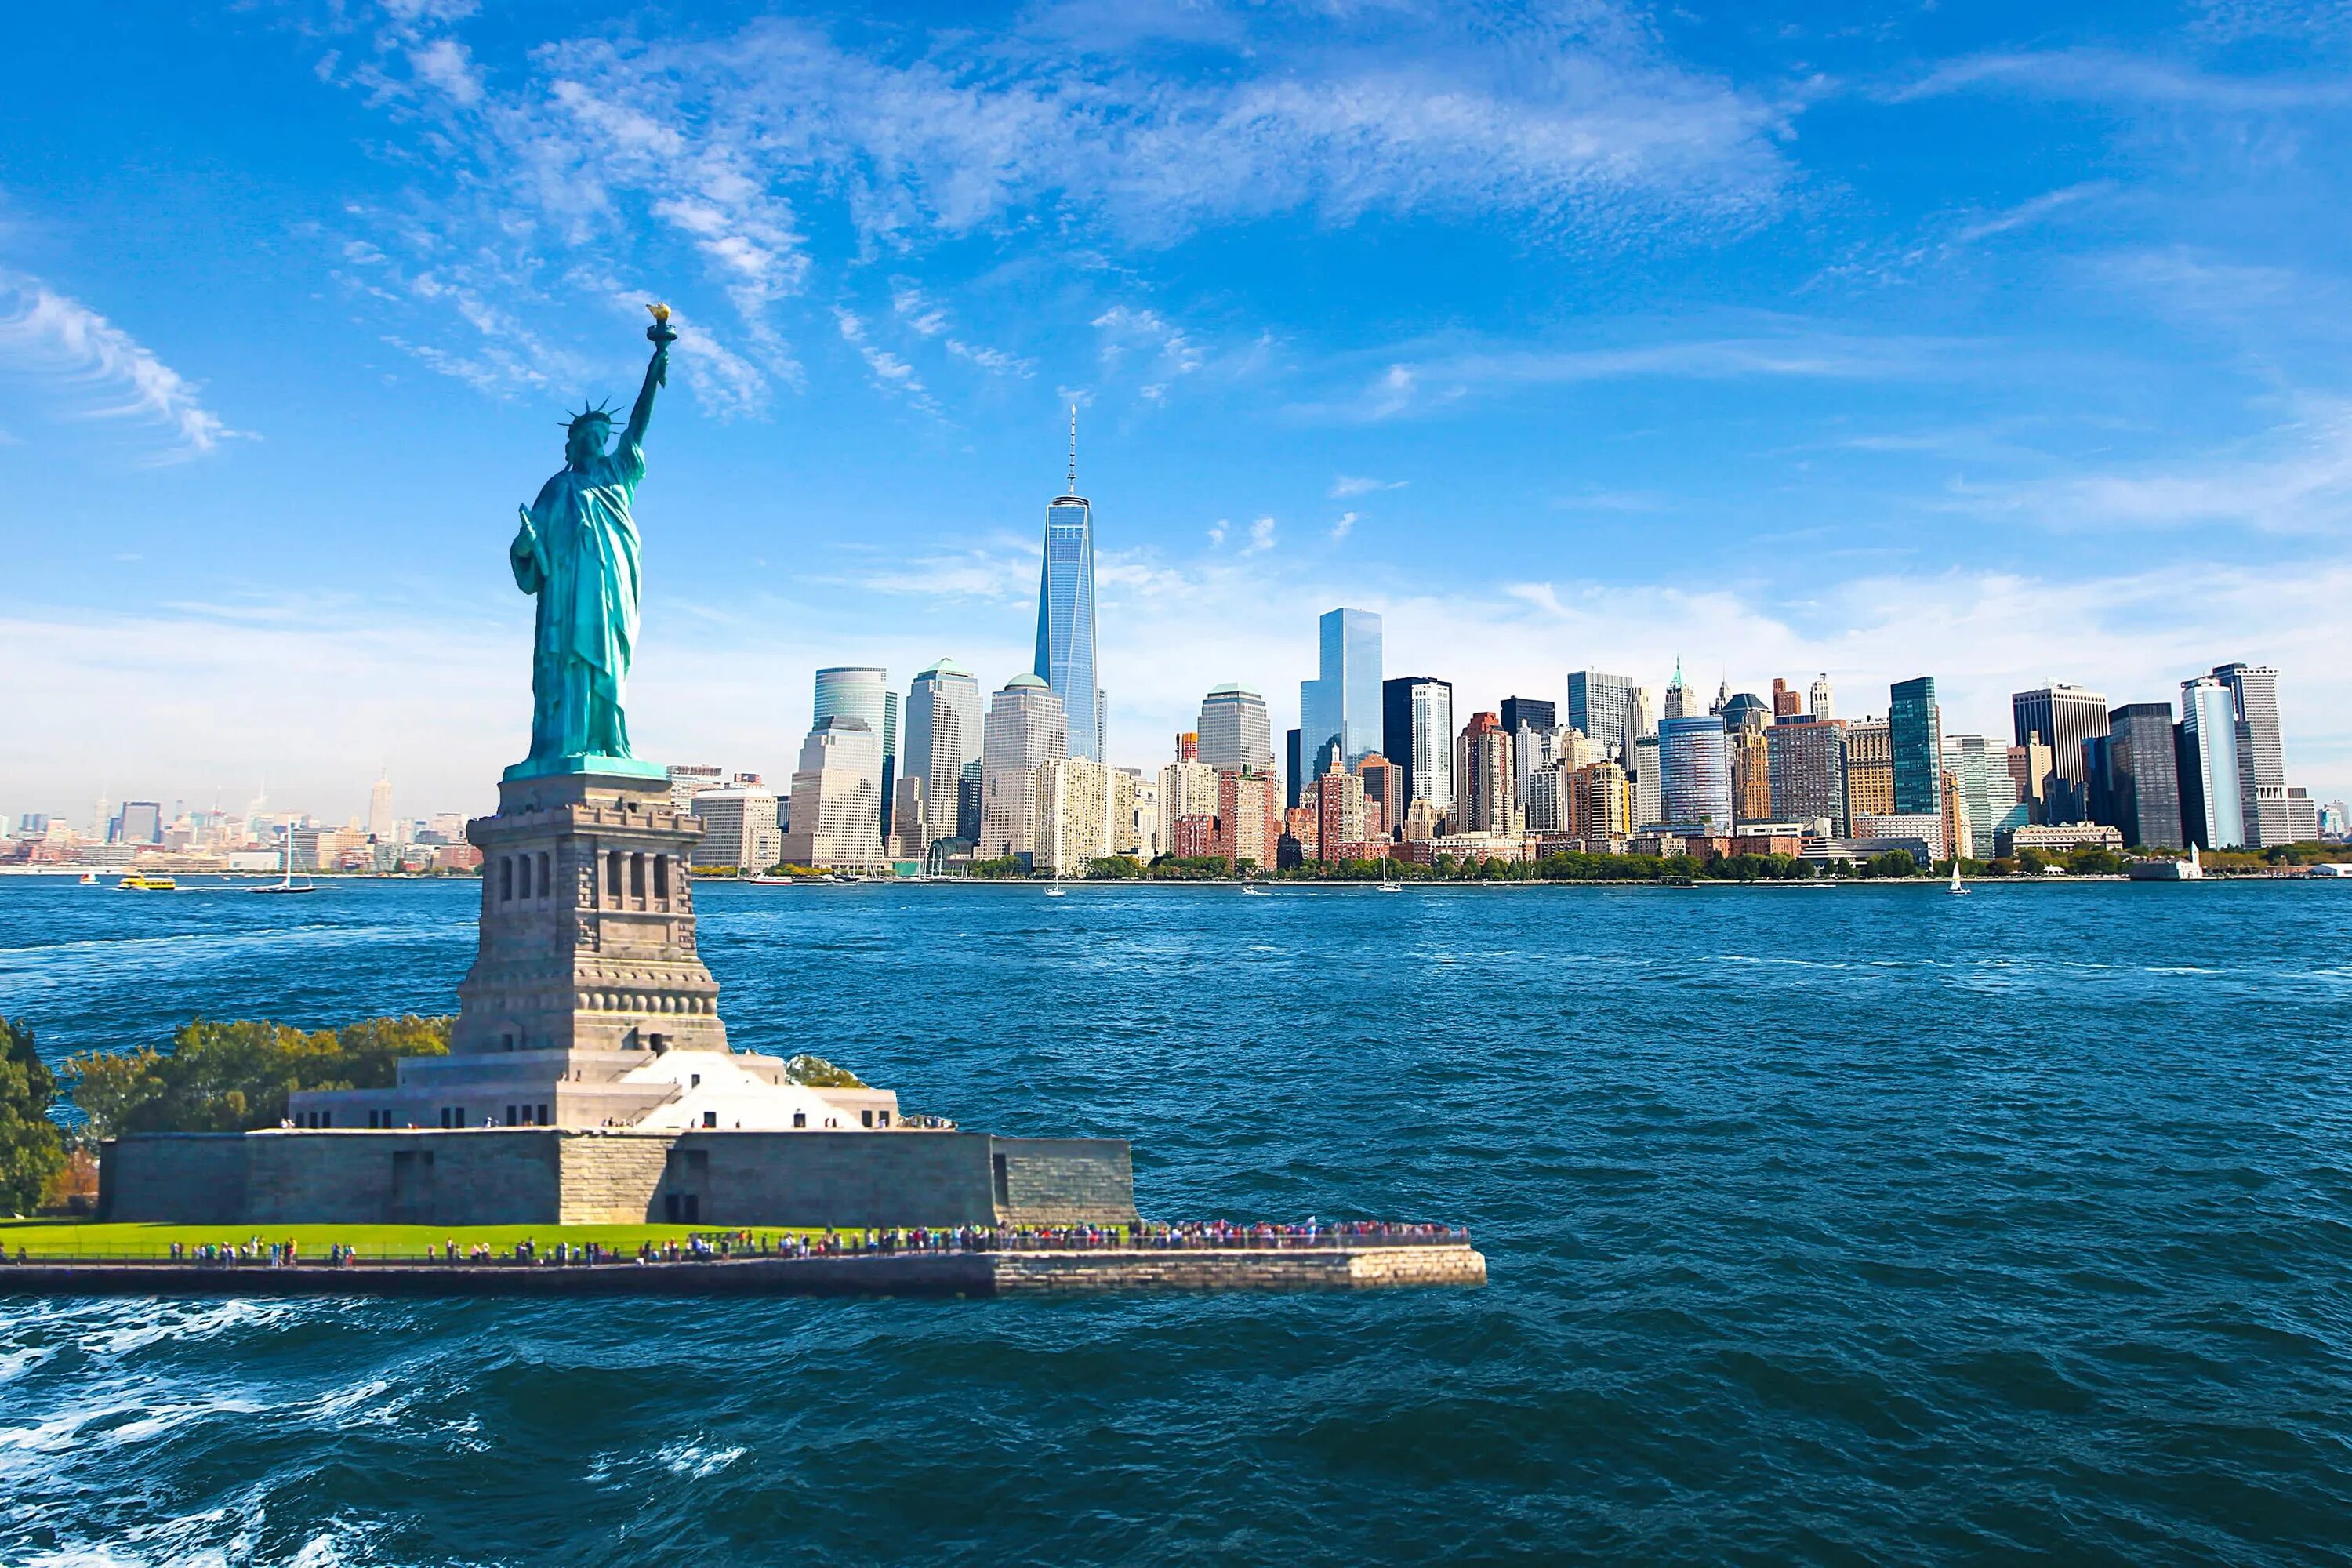 Покажи видео америка. Статуя свободы Нью-Йорк. Нью-Йорк бстатуясвободы. Нью Йорк стадия свободы. НЬЮЙ РРК статуя свободы.